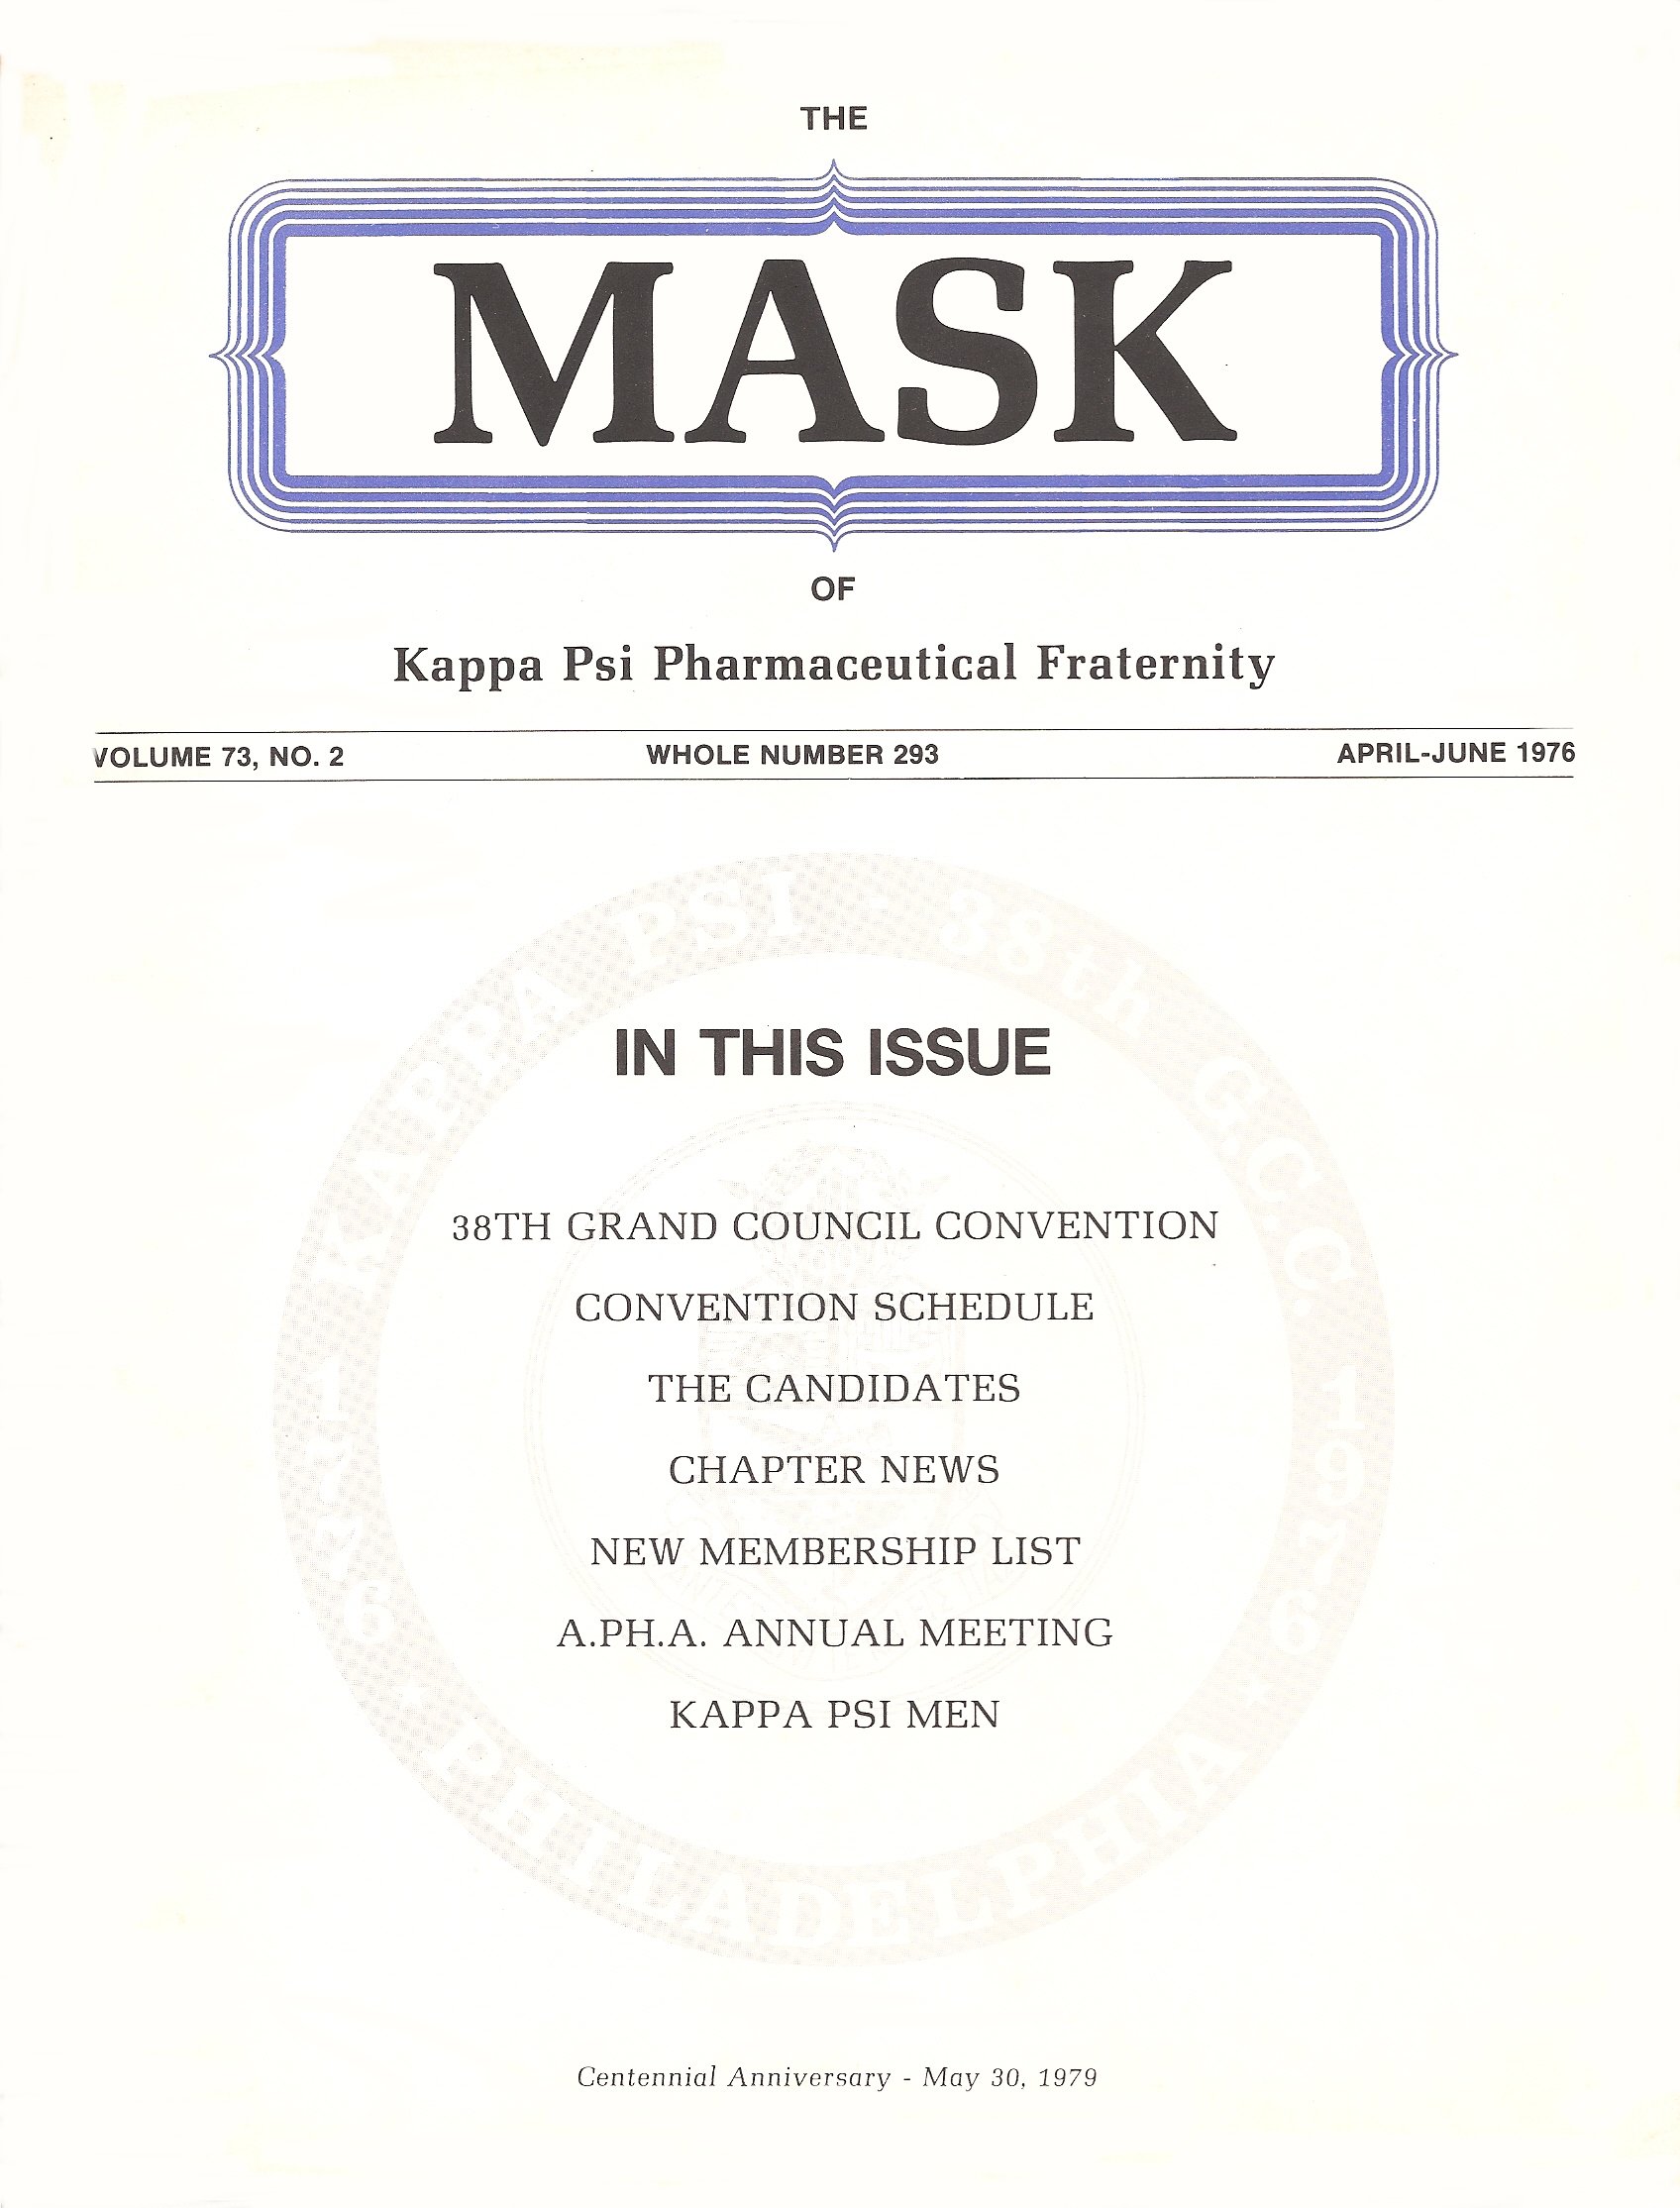 mask_cover_04_1976.jpg